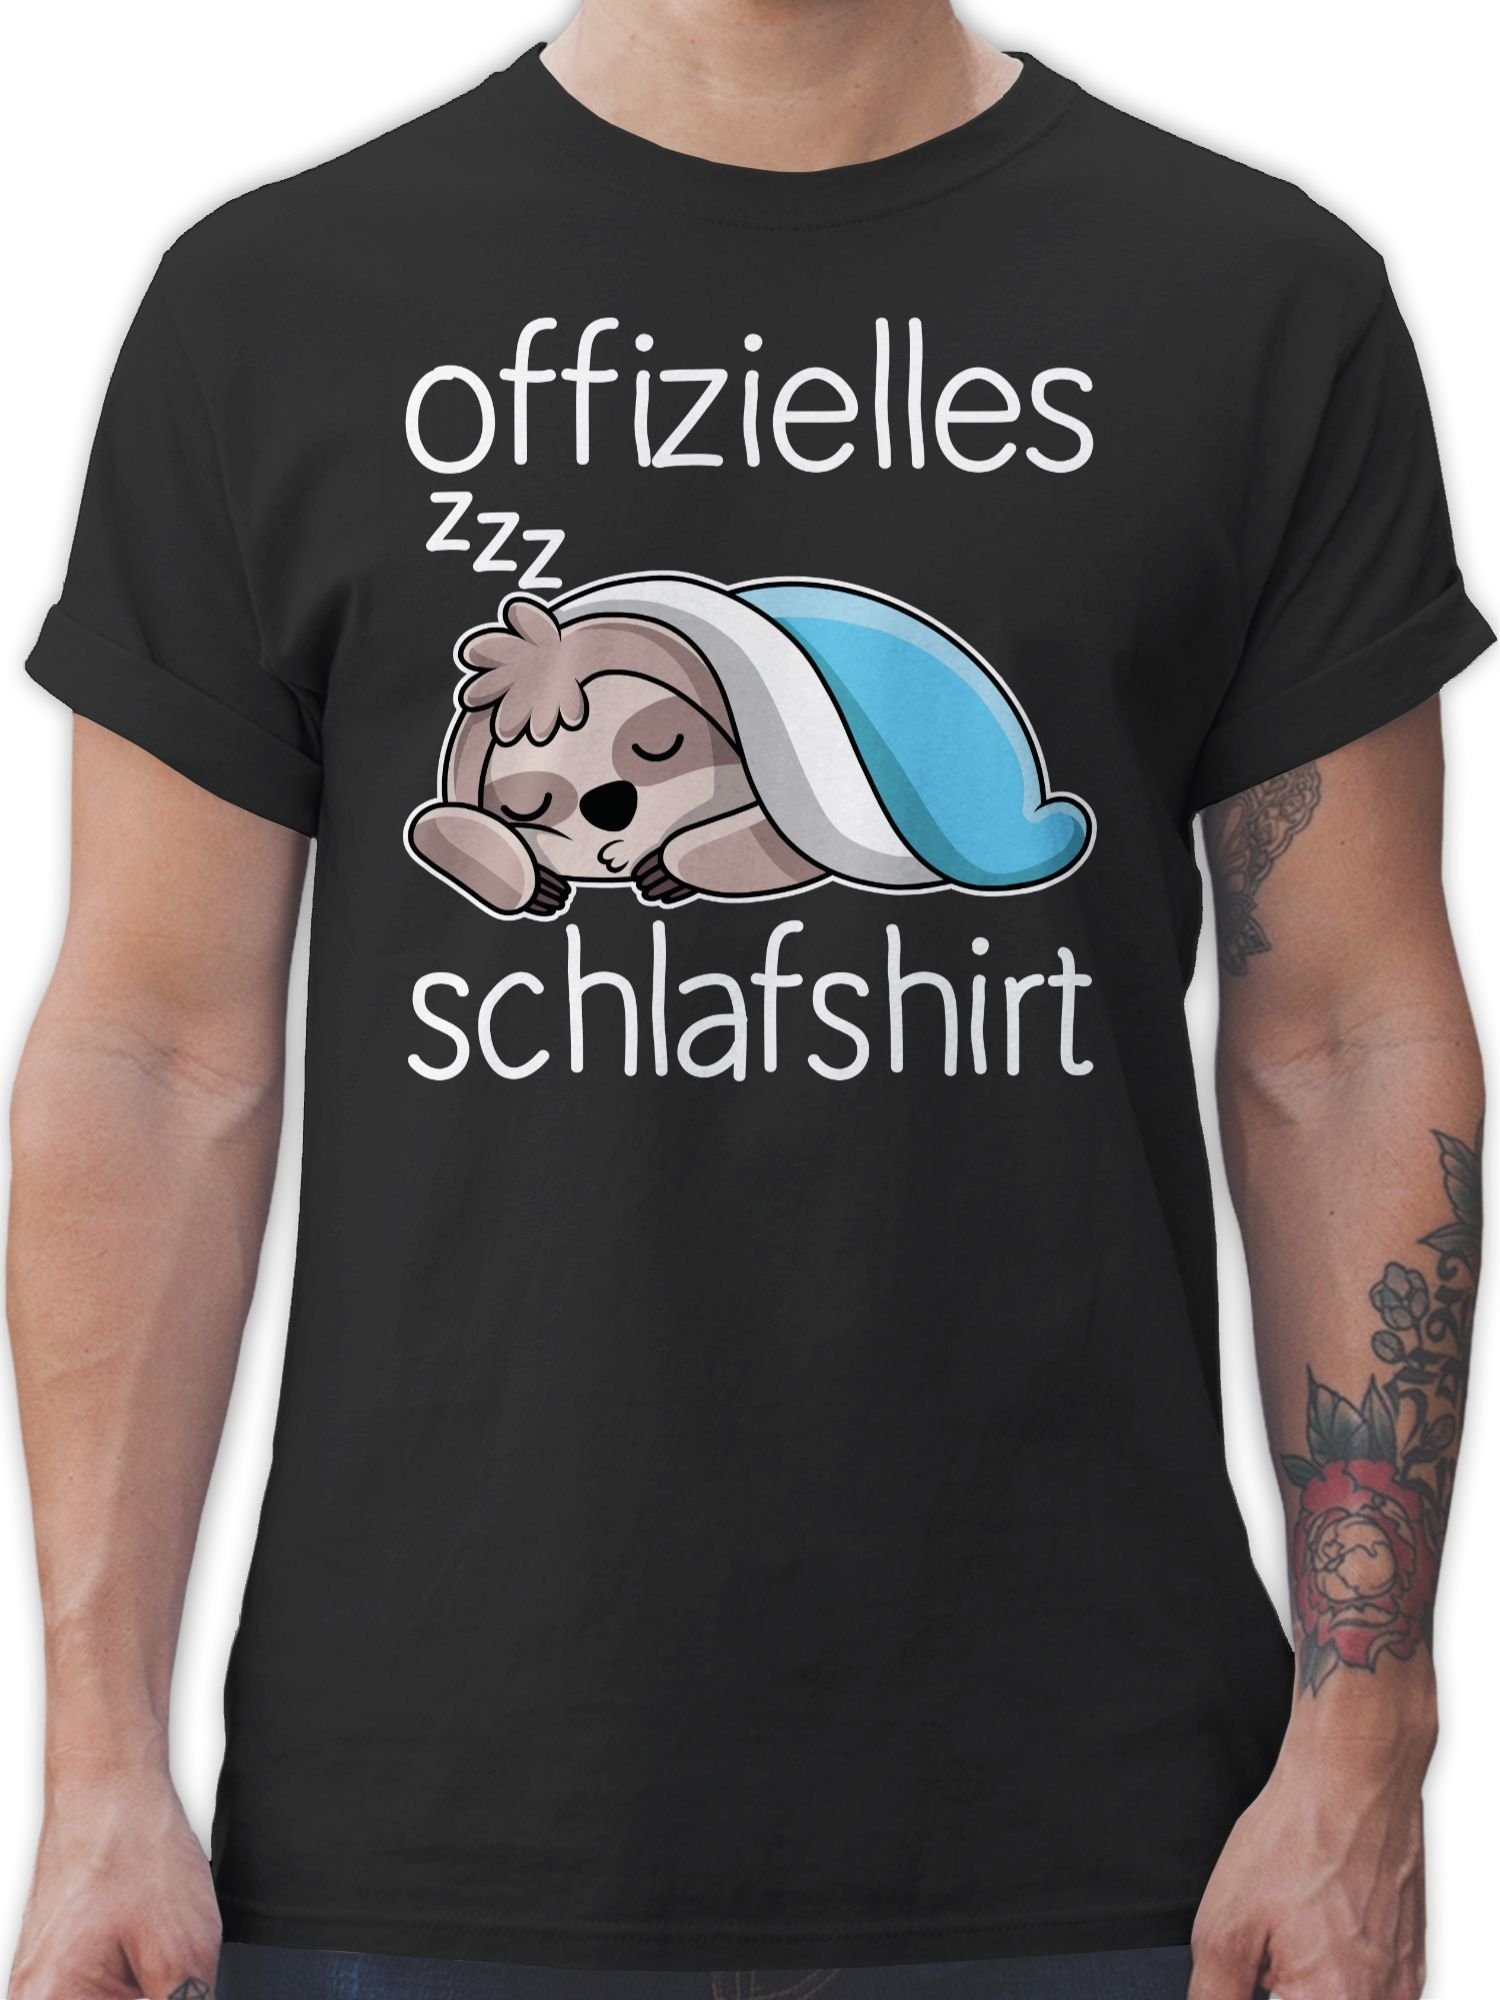 Shirtracer T-Shirt Offizielles Schlafshirt mit Statement Sprüche Schwarz weiß Faultier 01 